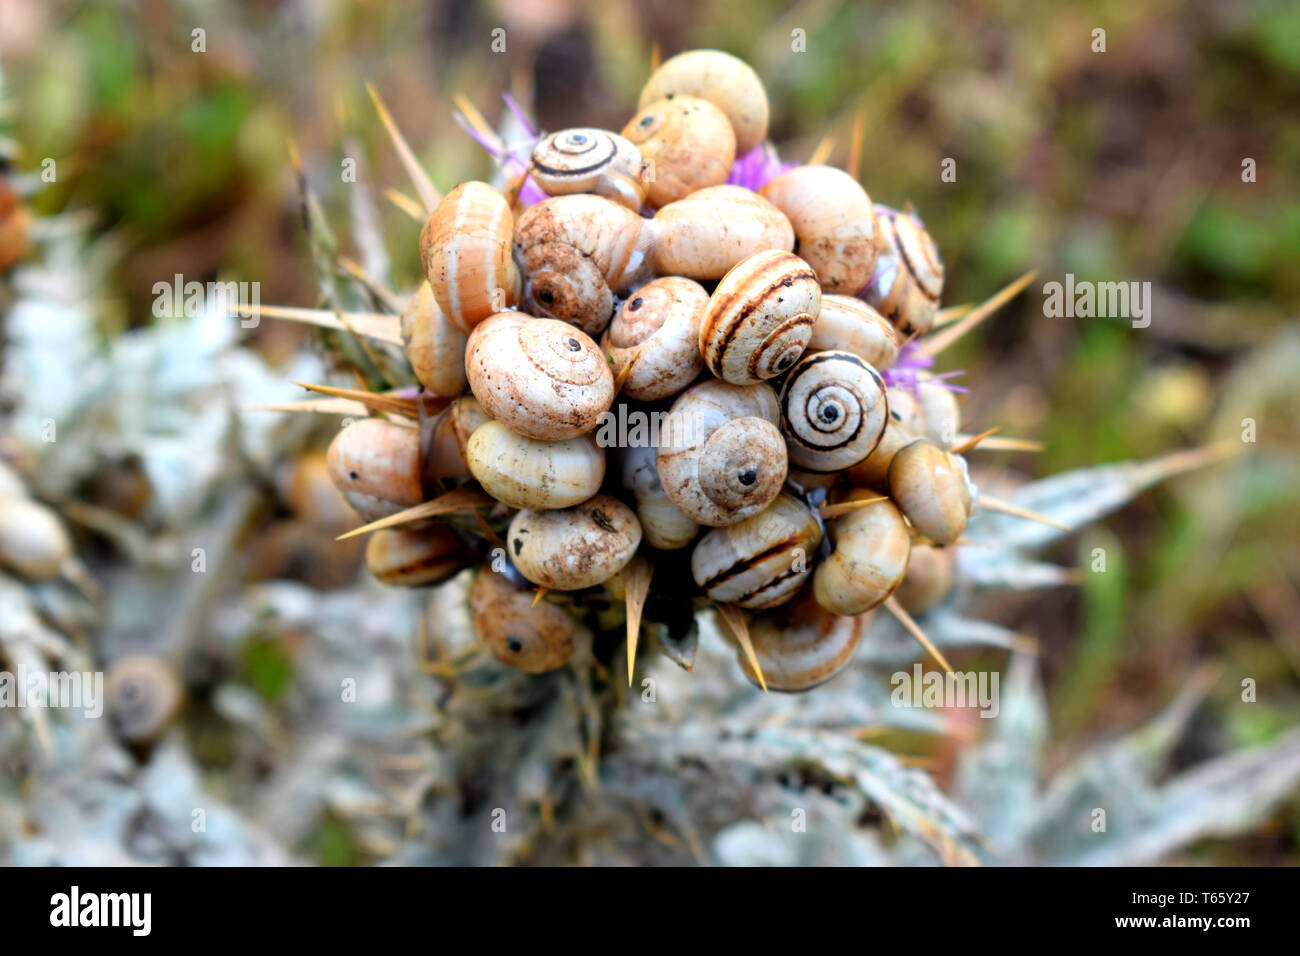 Gruppo di lumache su thistle : Close up di una lumaca colonia su thistle Foto Stock